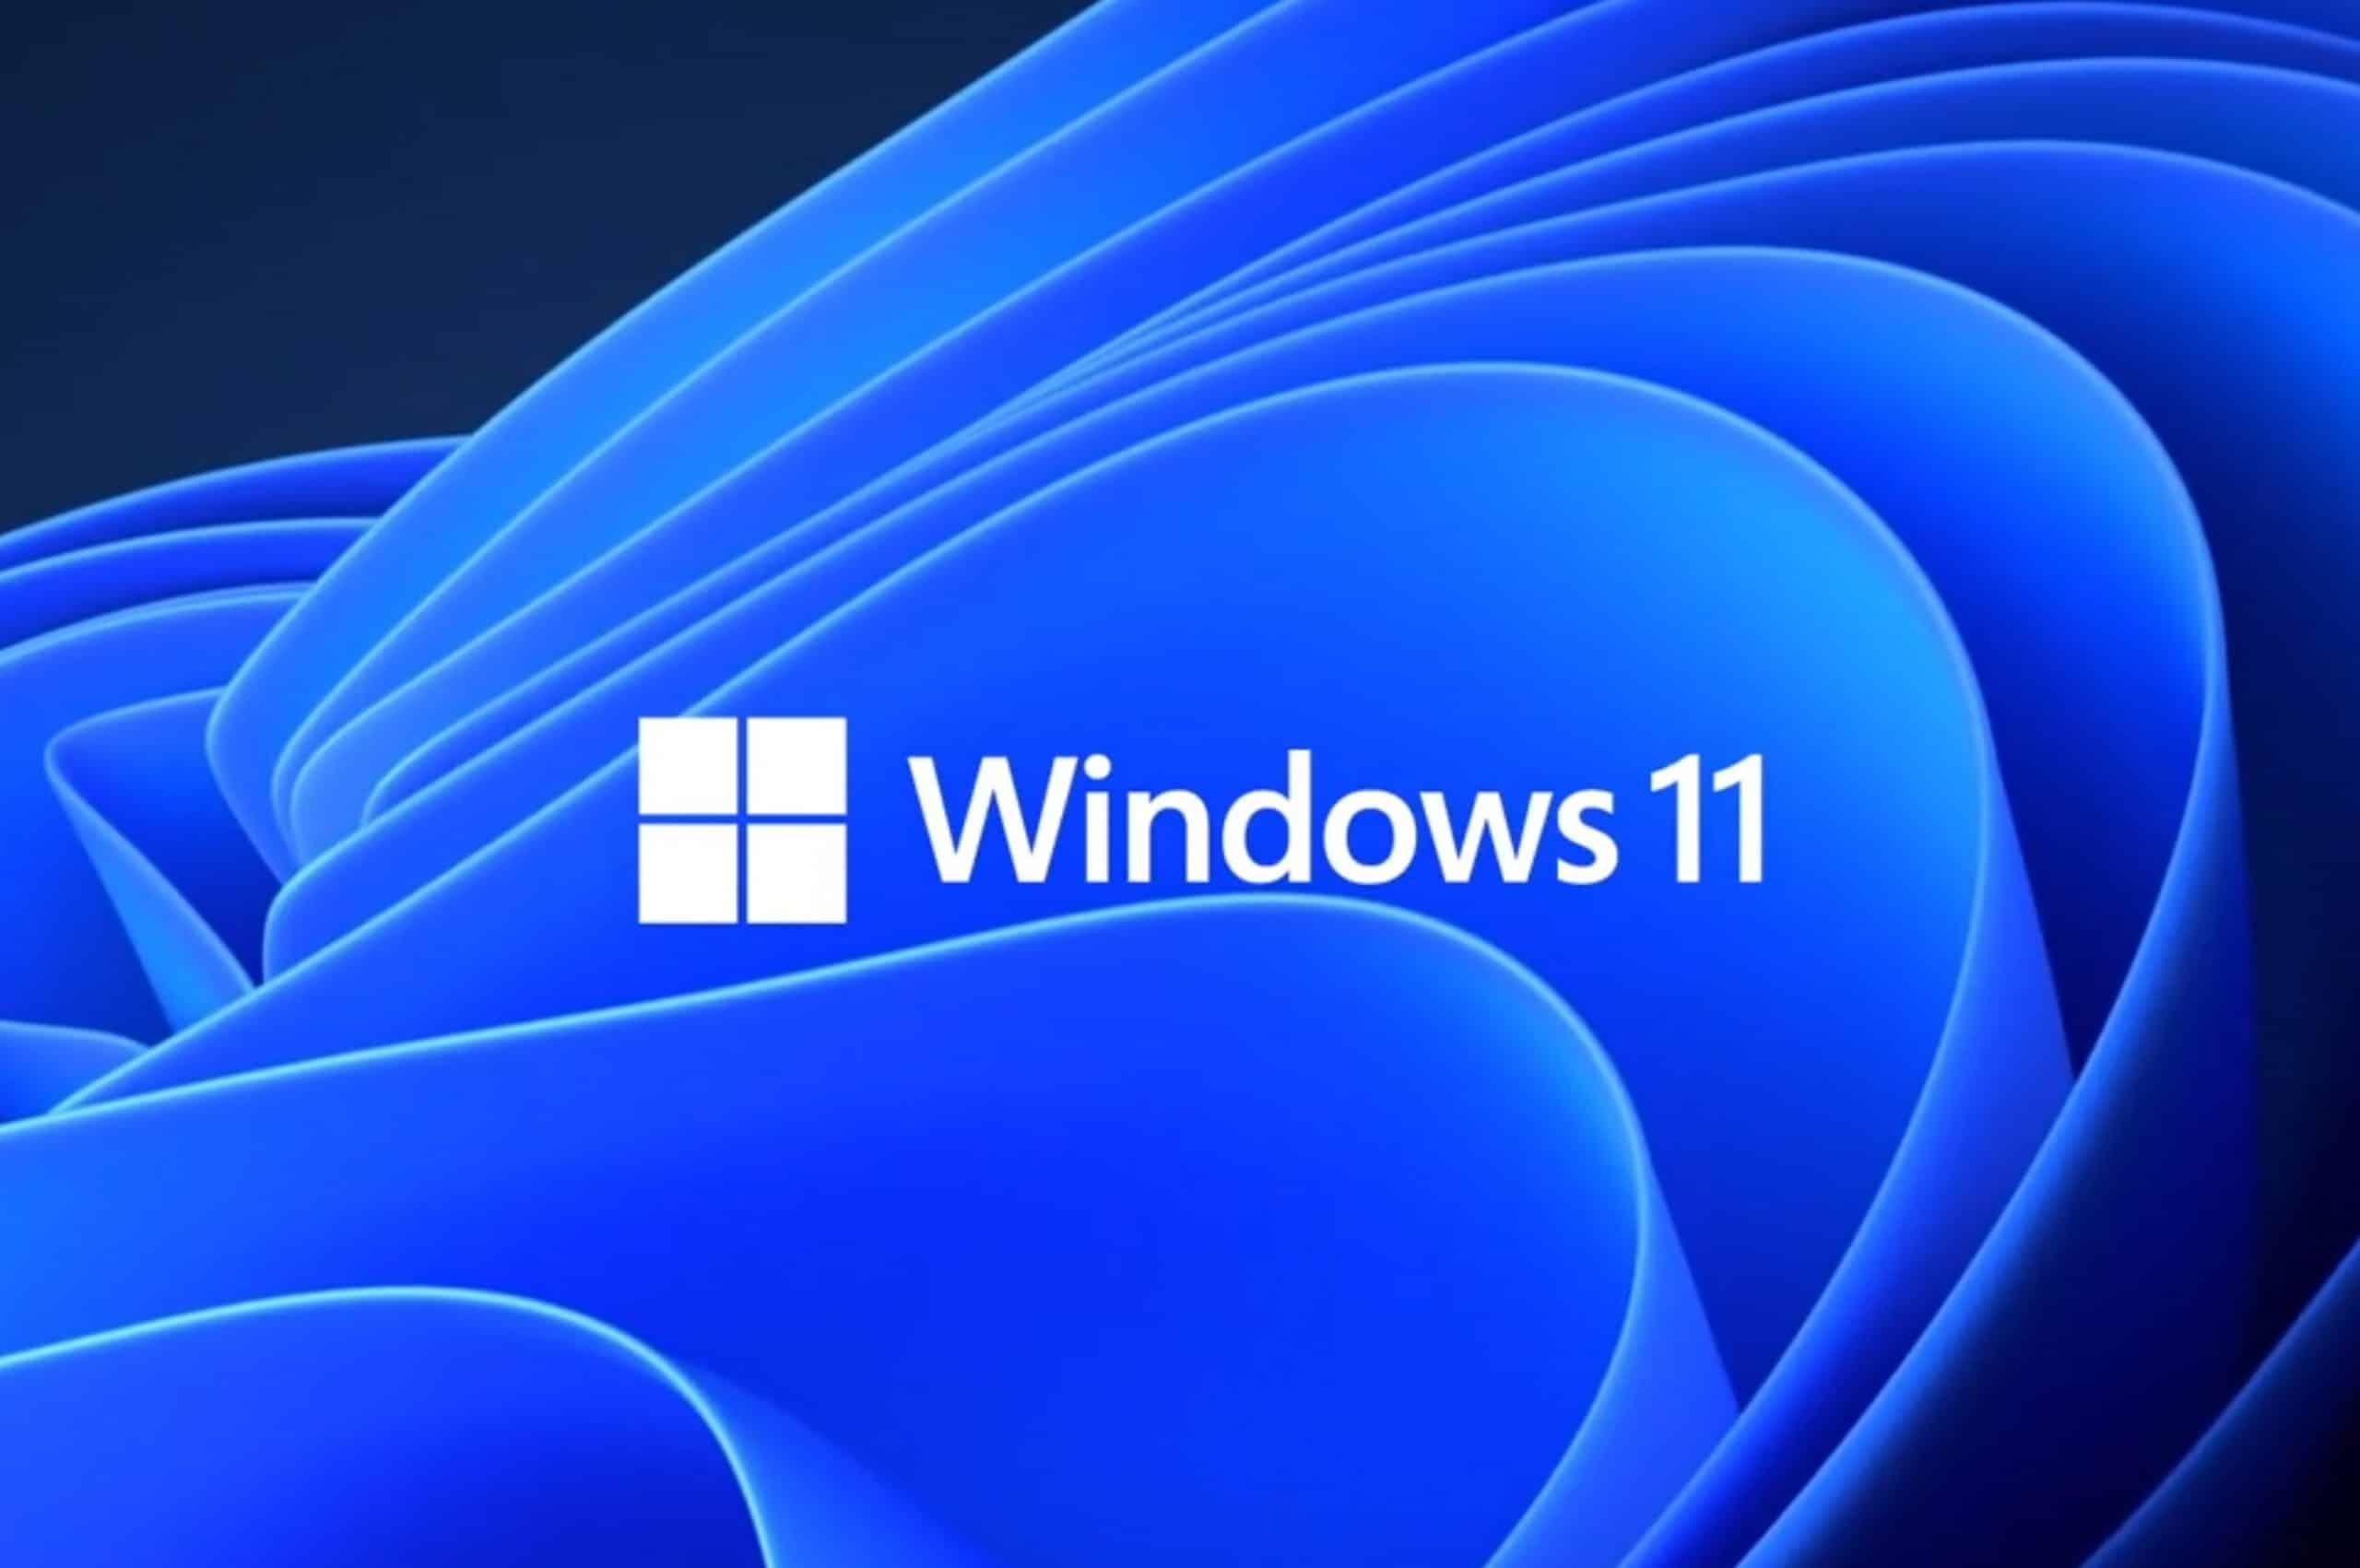 Le impostazioni di Windows 11 avranno presto una nuova scheda Home, che conterrà i controlli utilizzati più di frequente.